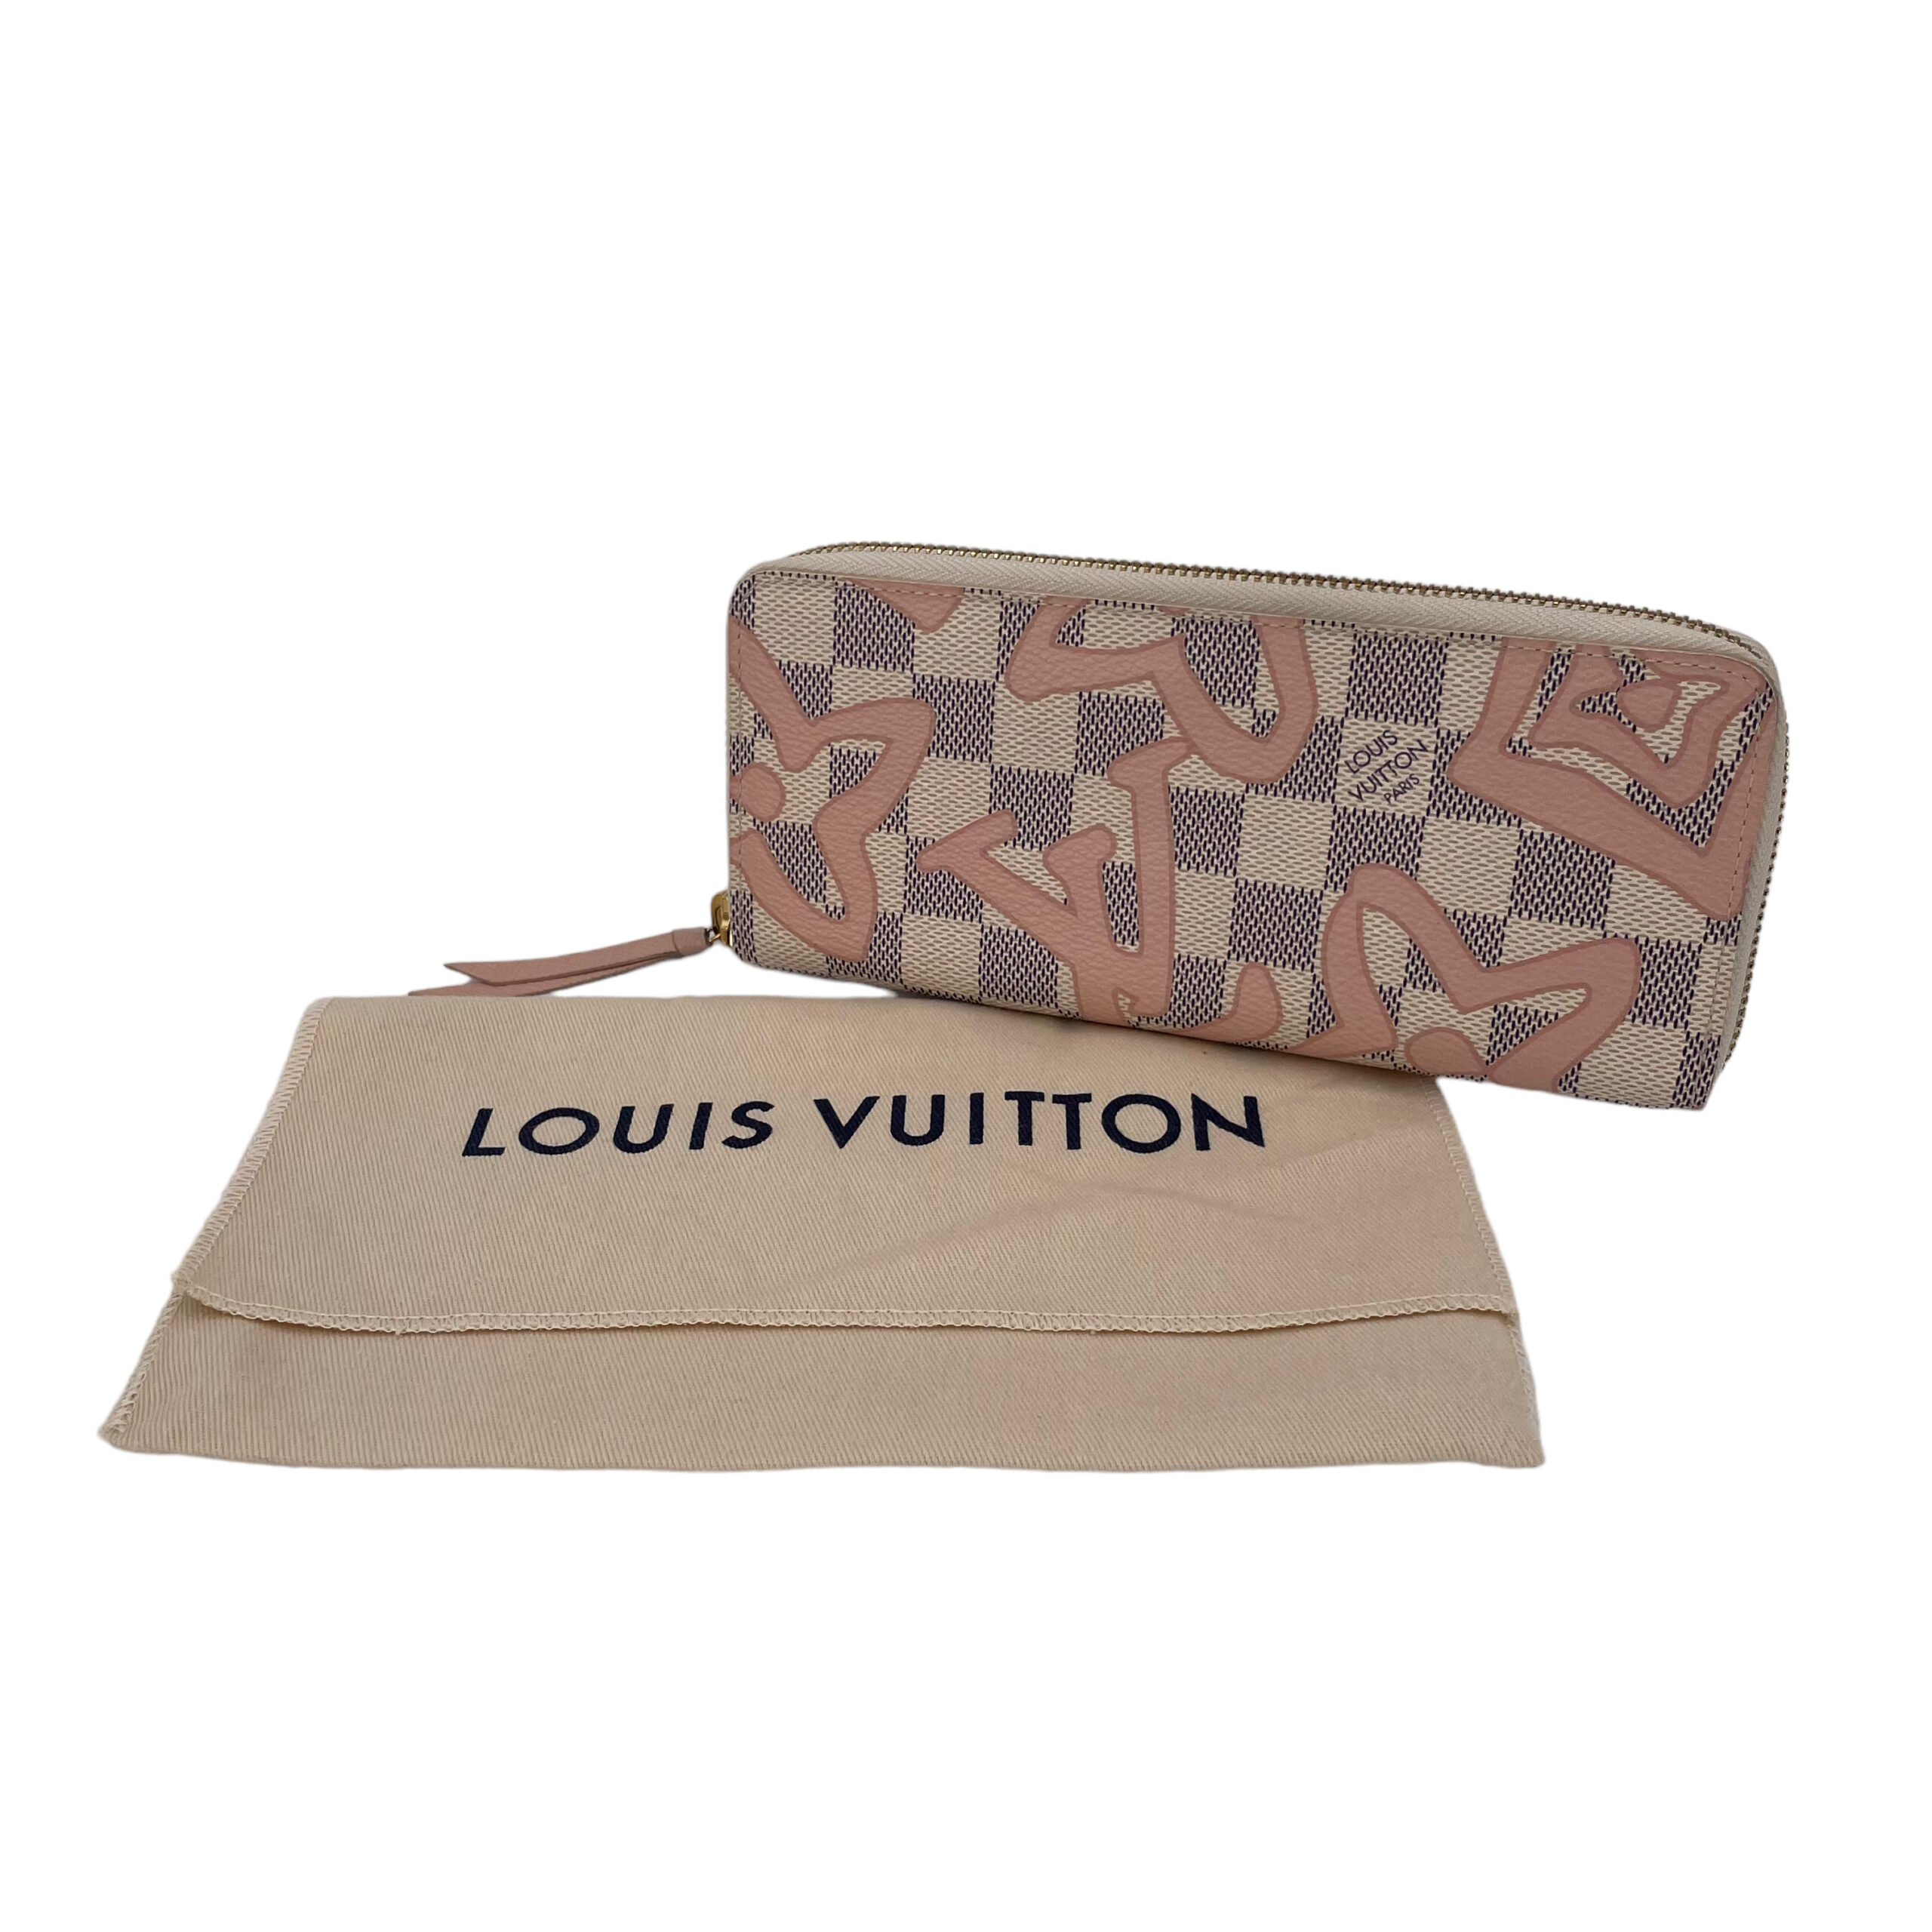 Replica Louis Vuitton N60099 Clemence Wallet Damier Azur Canvas For Sale